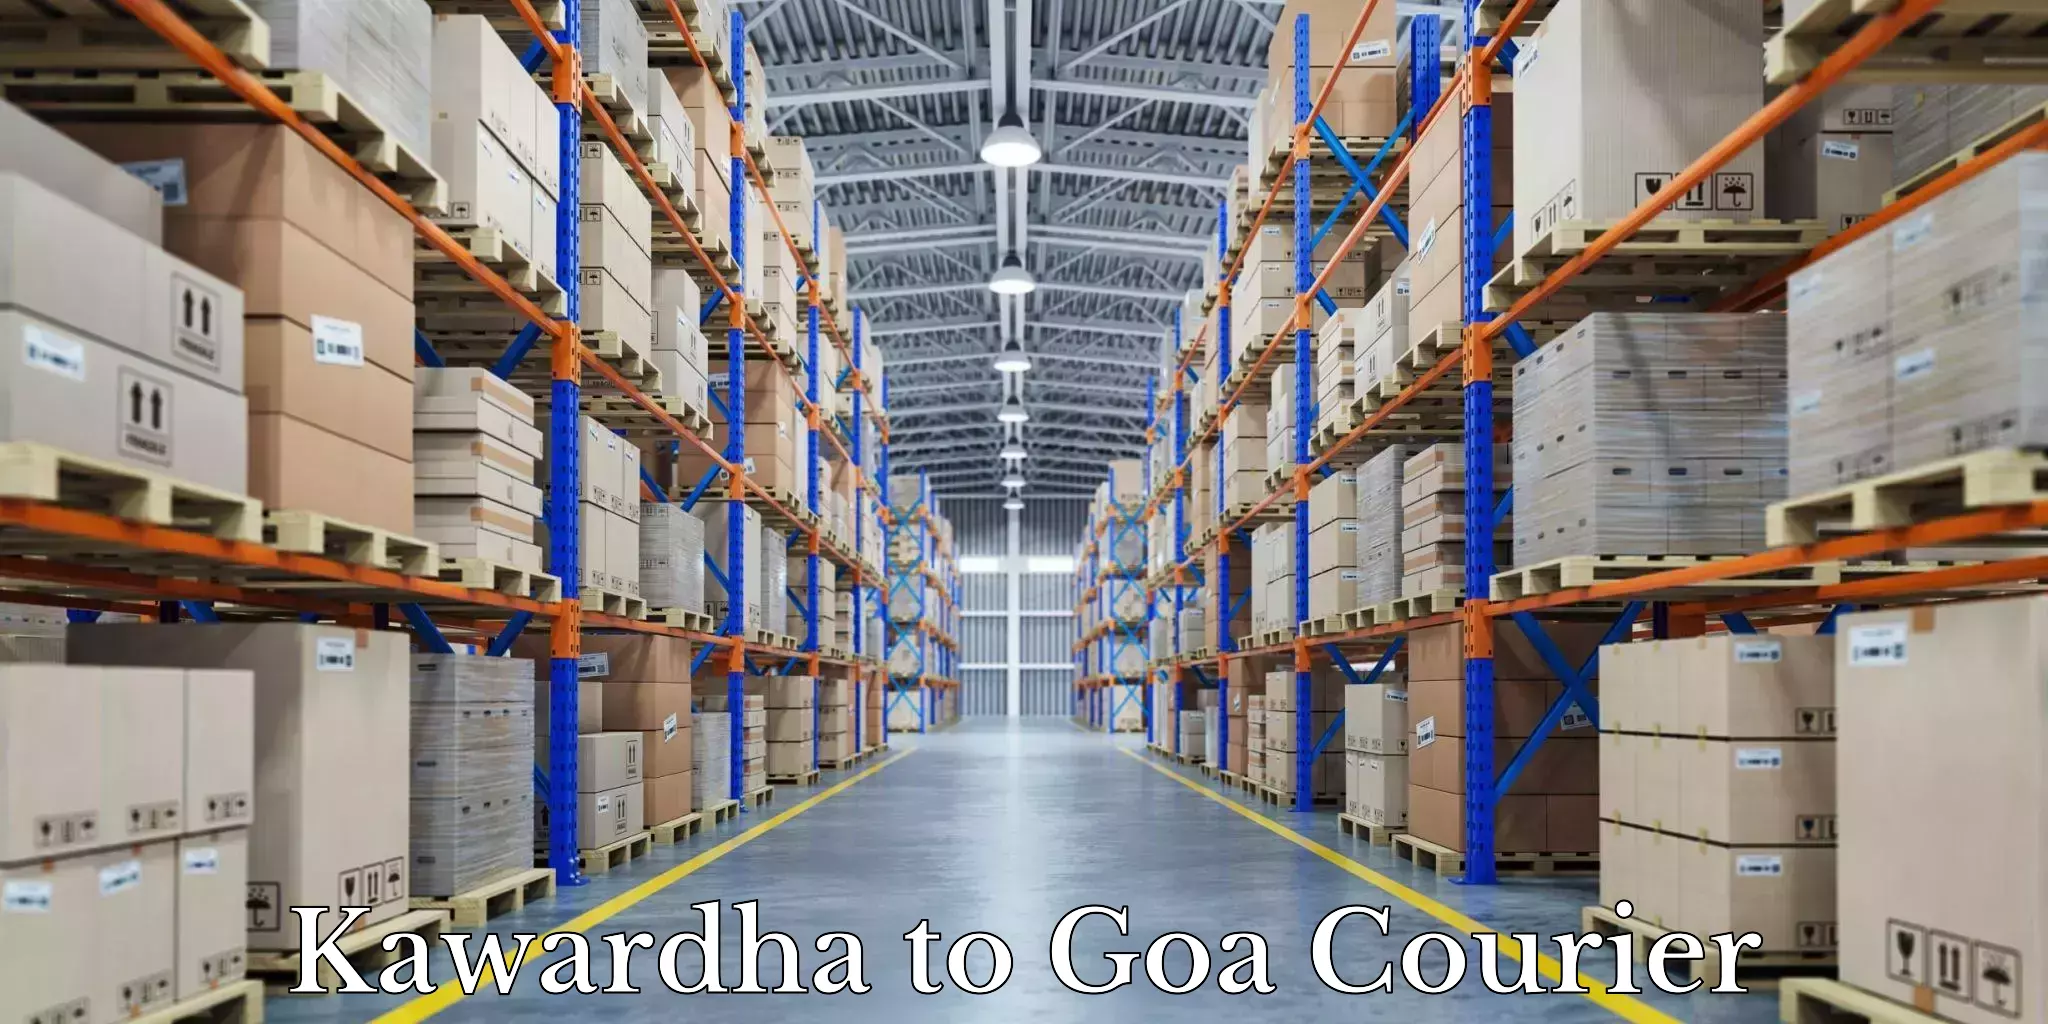 Efficient moving strategies Kawardha to IIT Goa